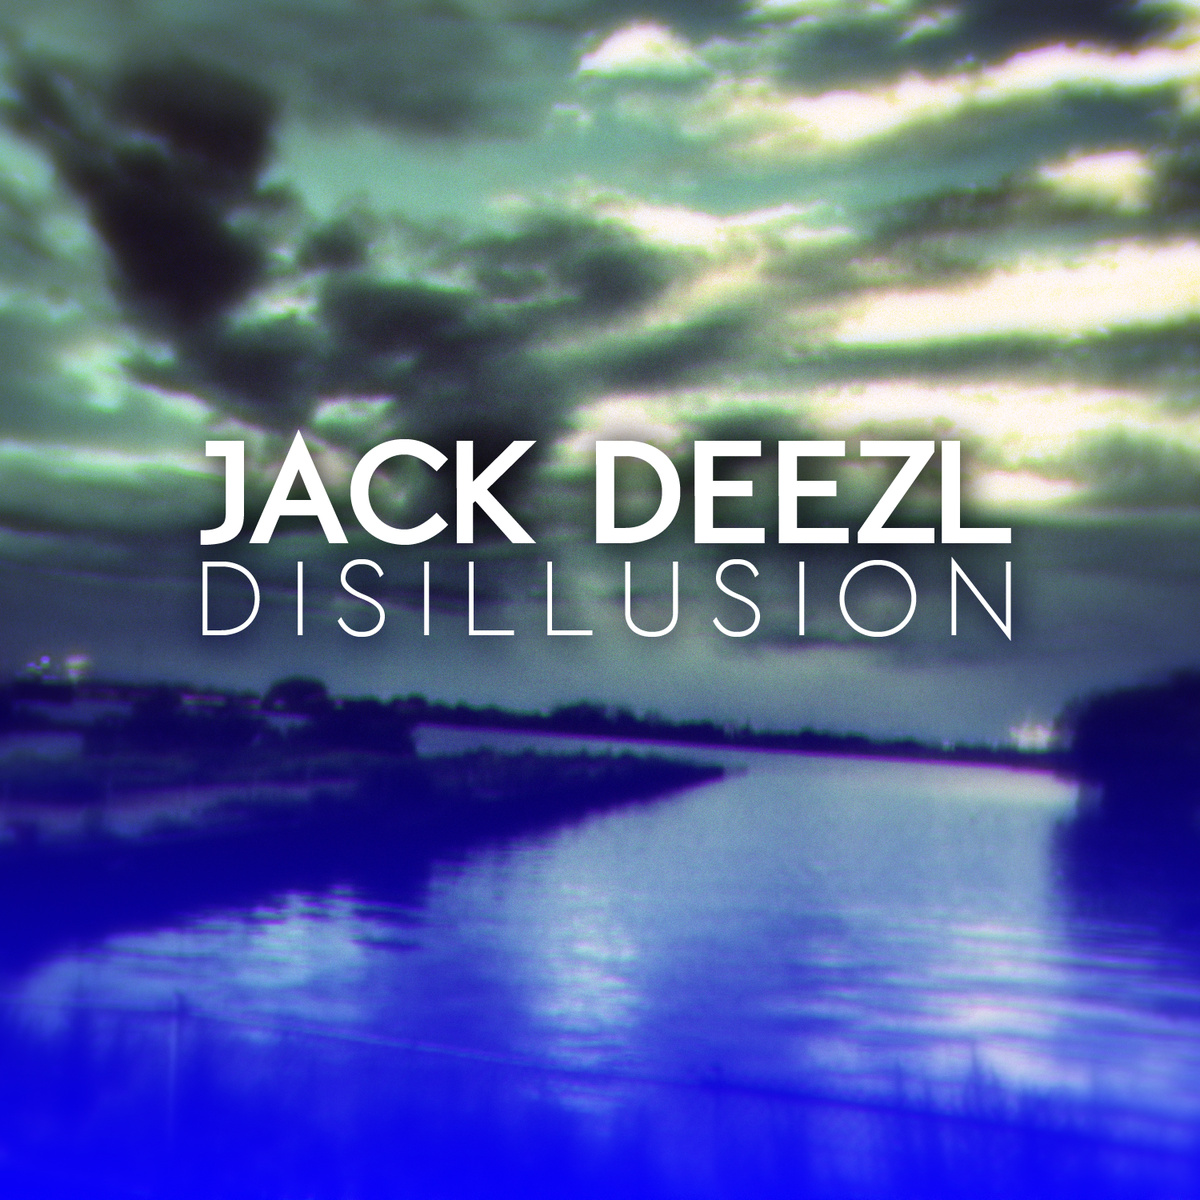 Disillusion(). Jack speak